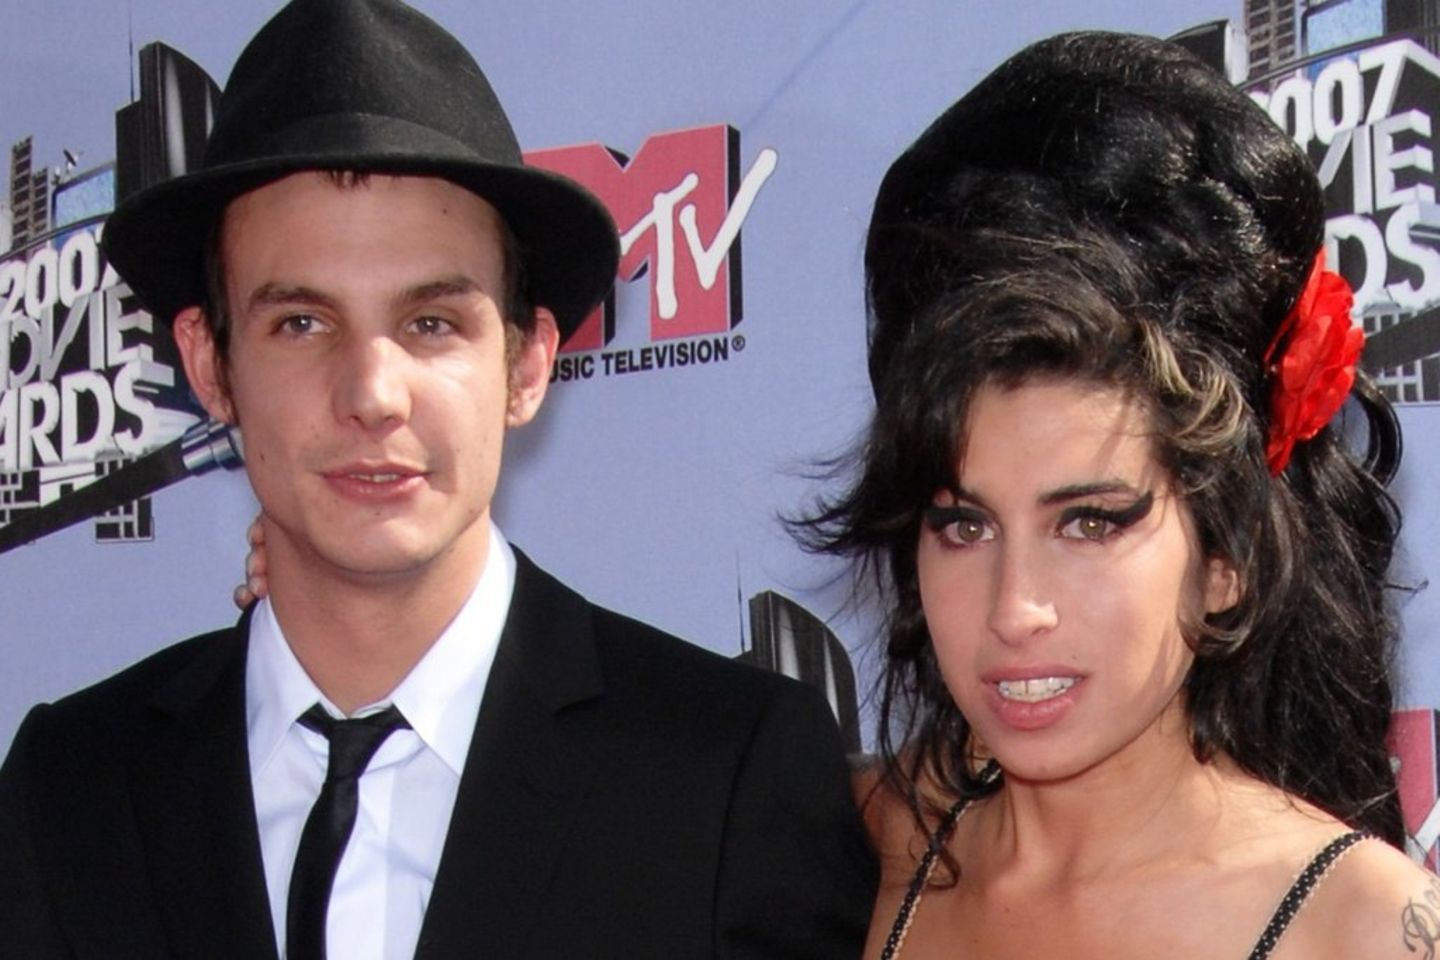 Amy Winehouse und Blake Fielder-Civil waren von 2007 bis 2009 ein Ehepaar.